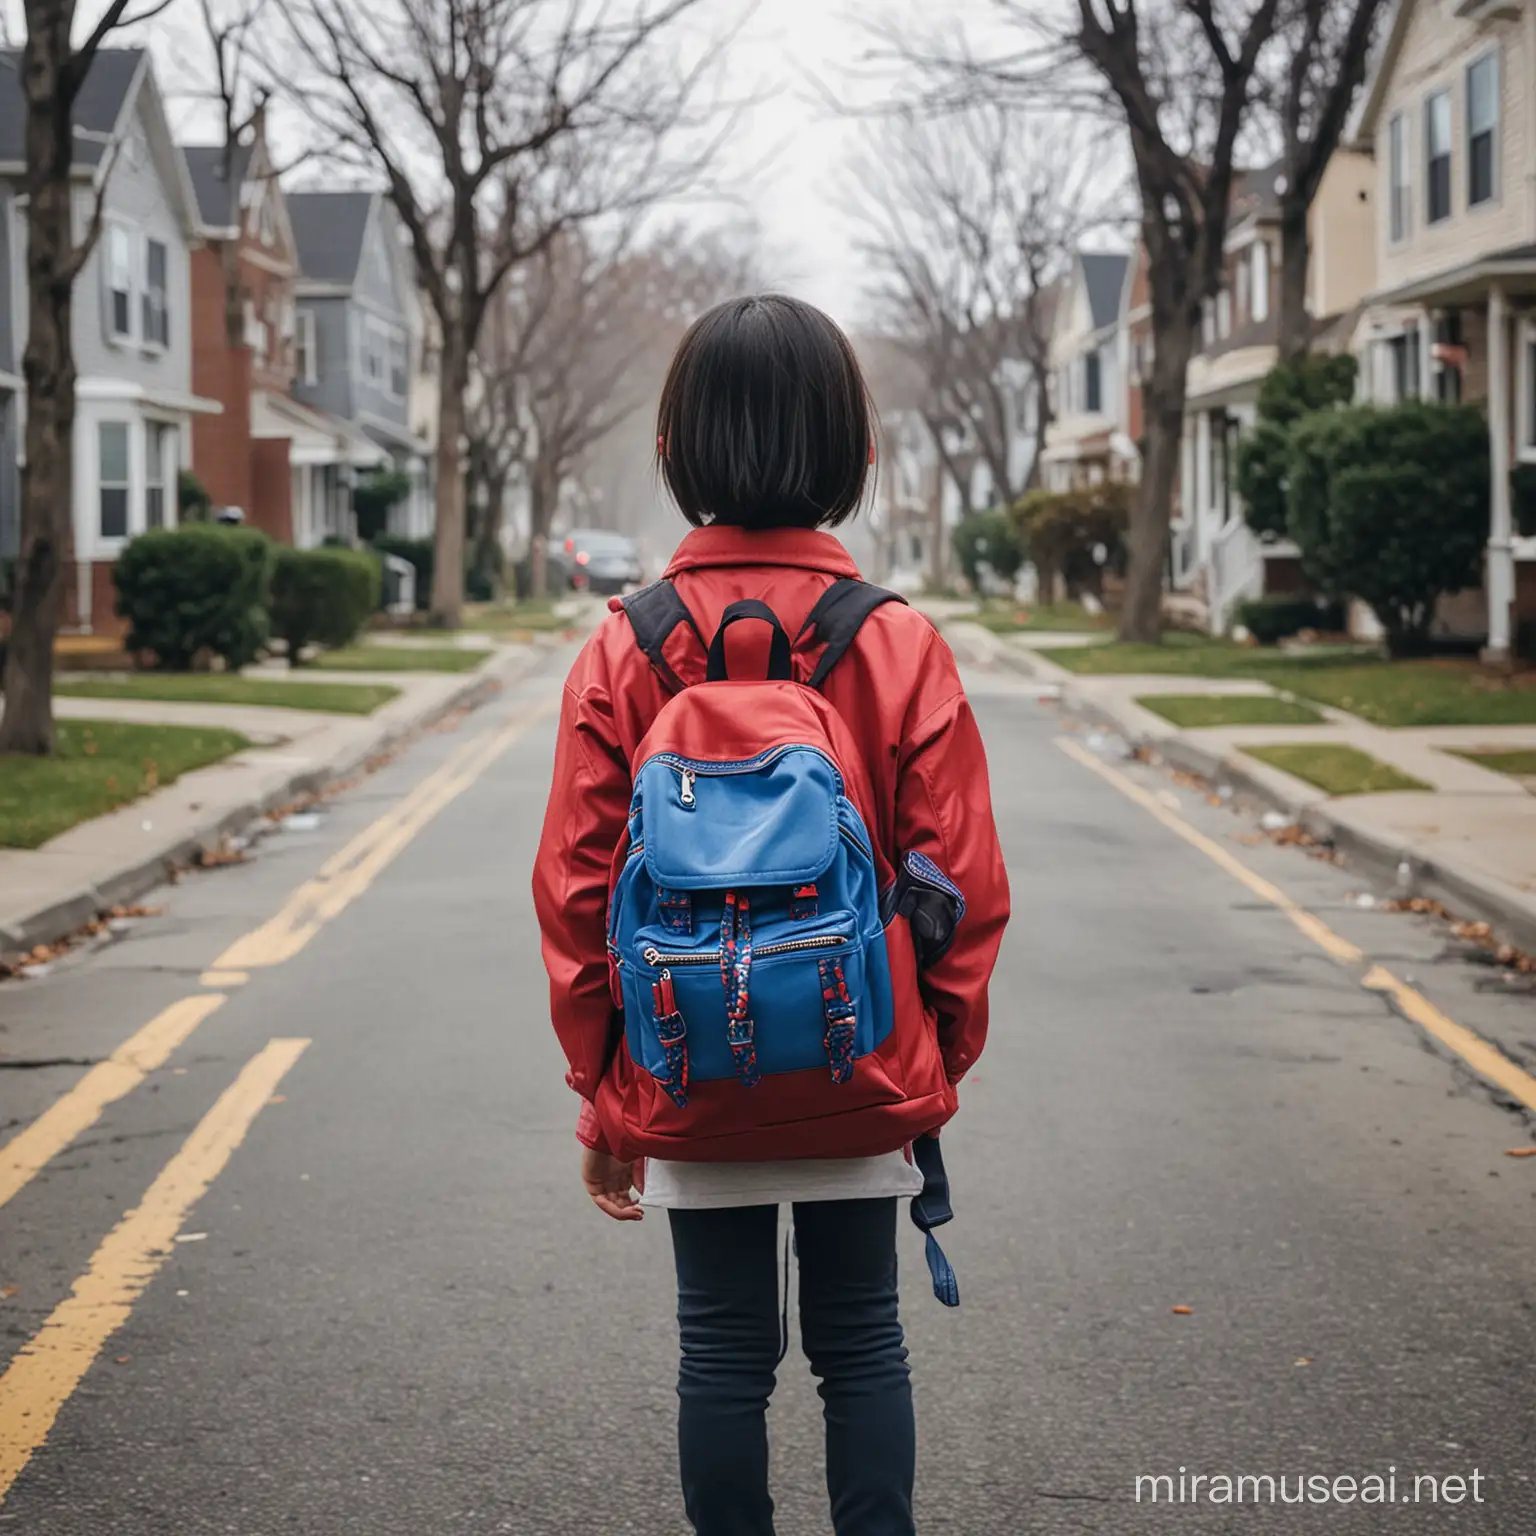 一个背着东亚民族风红蓝色背包的亚裔小女孩的背影，站在美国社区空荡的街道上，天空很阴沉